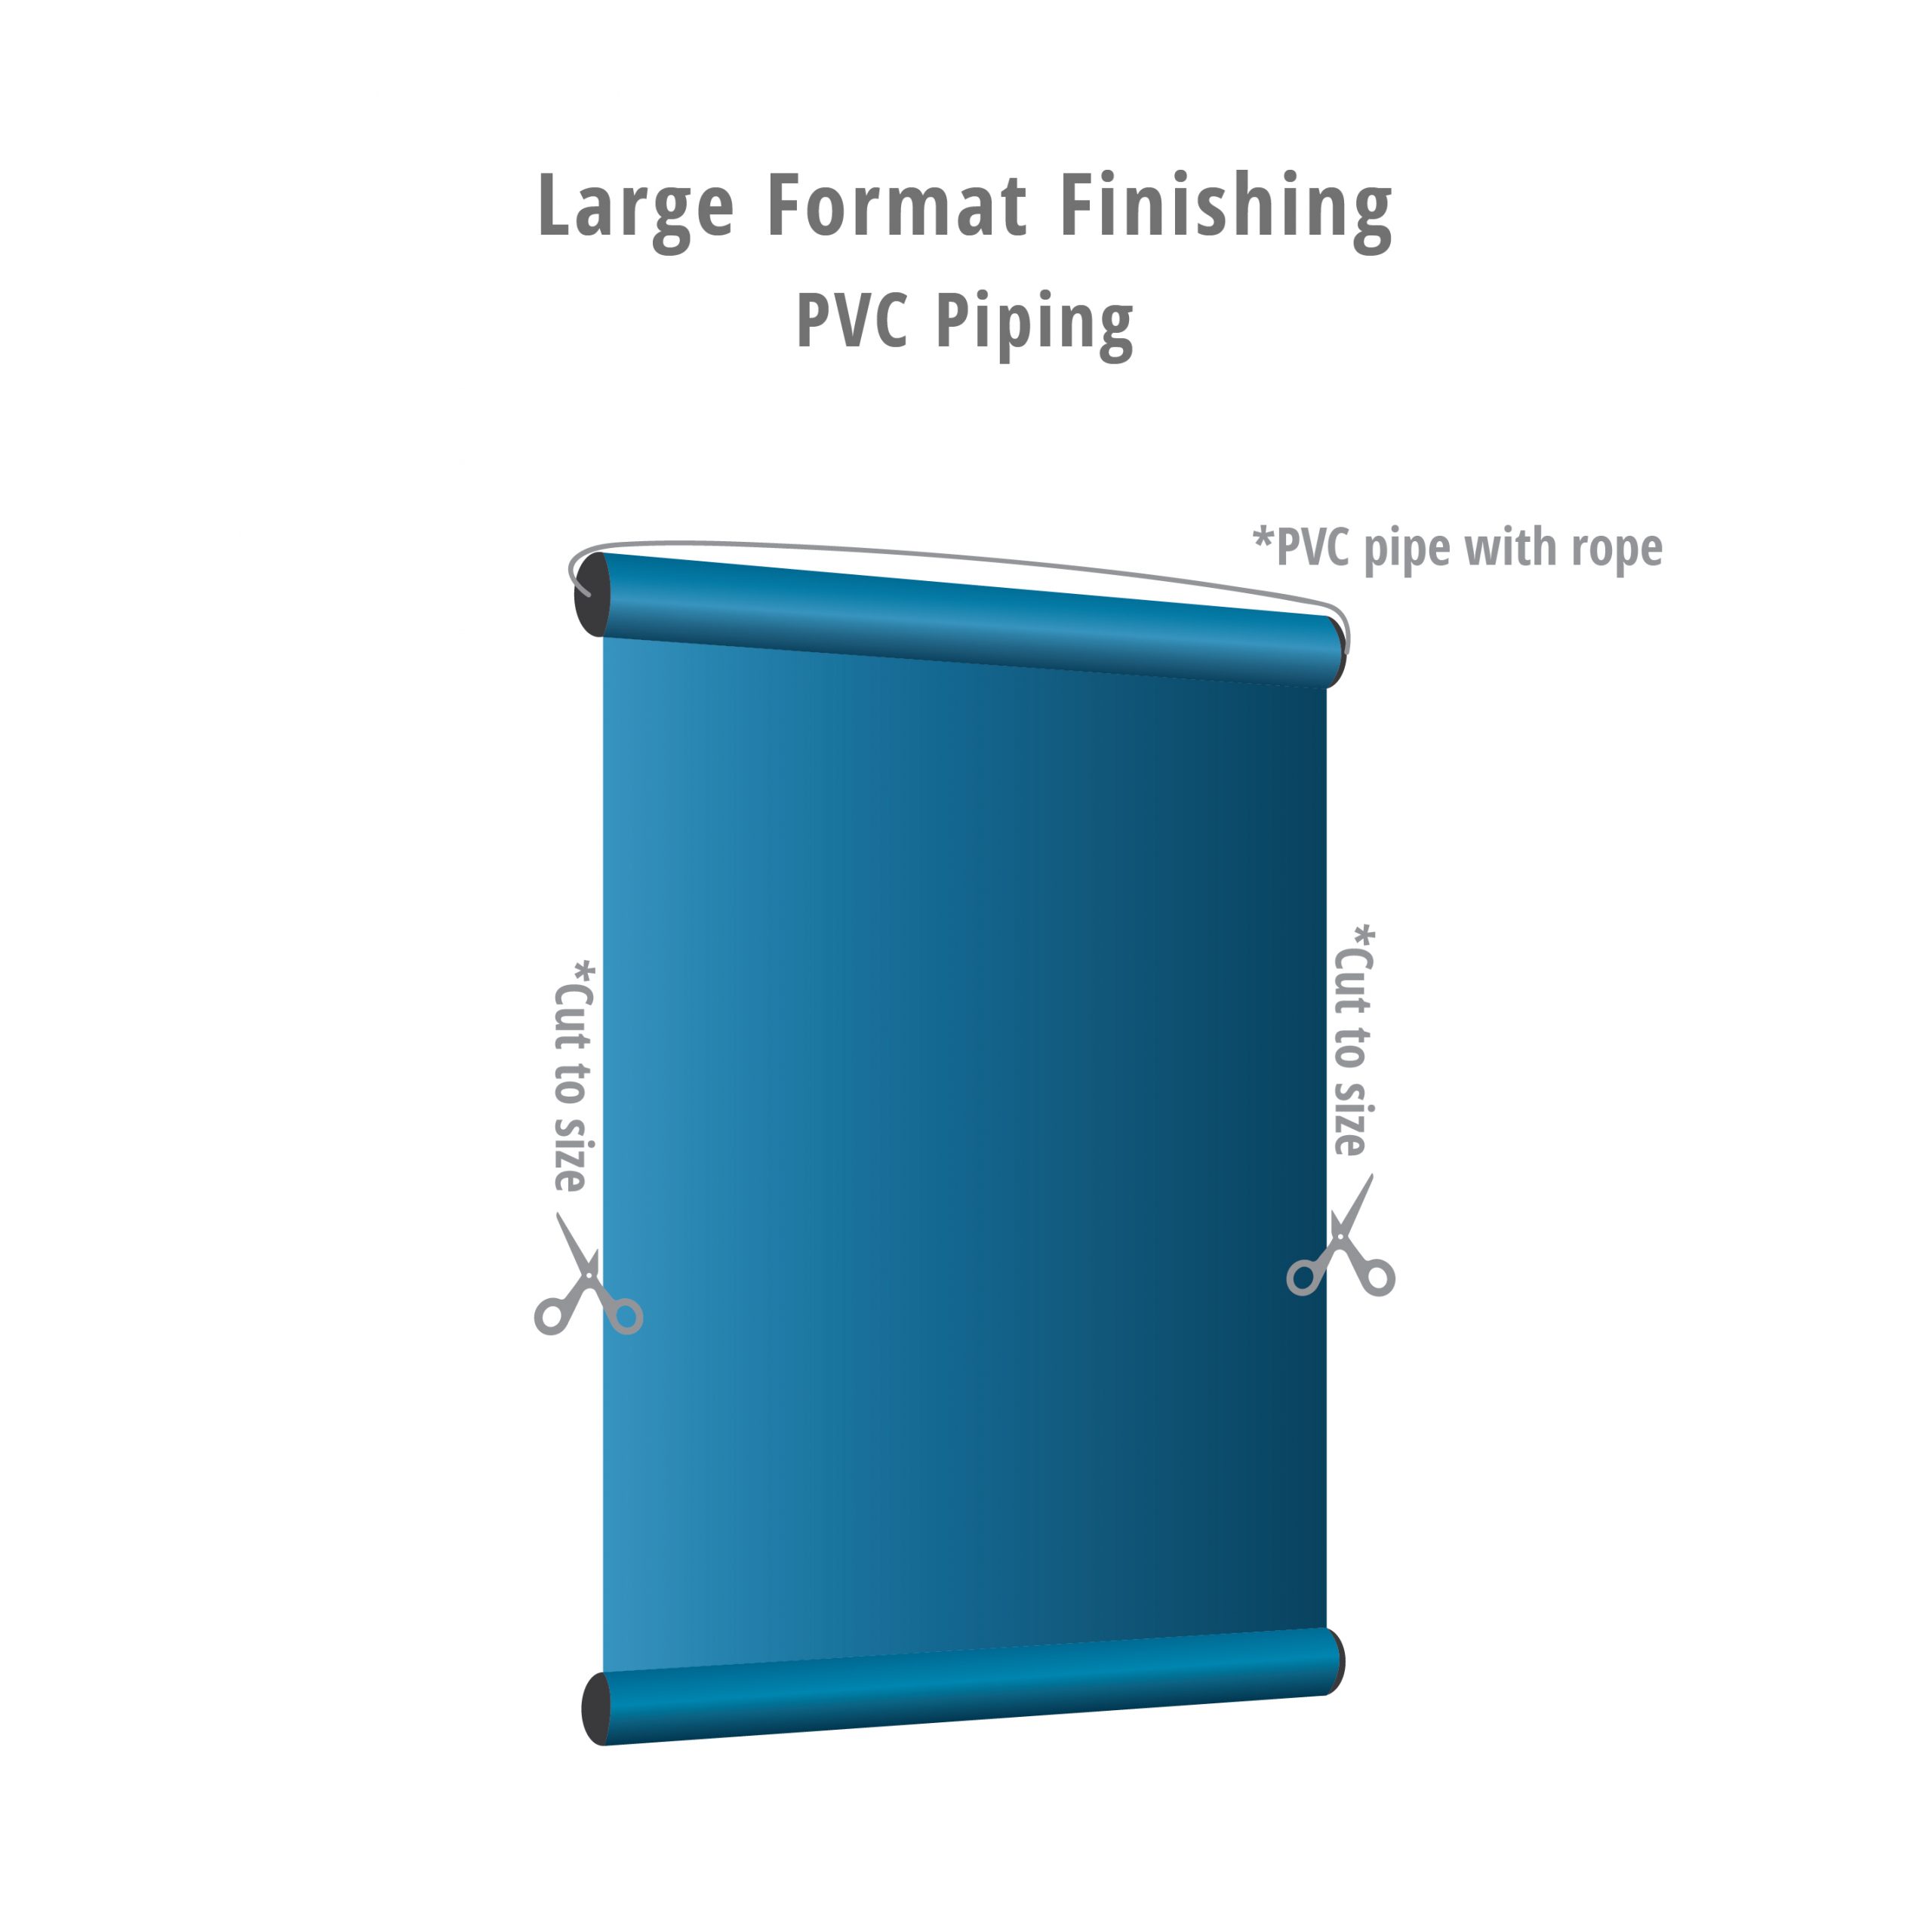 PVC Piping